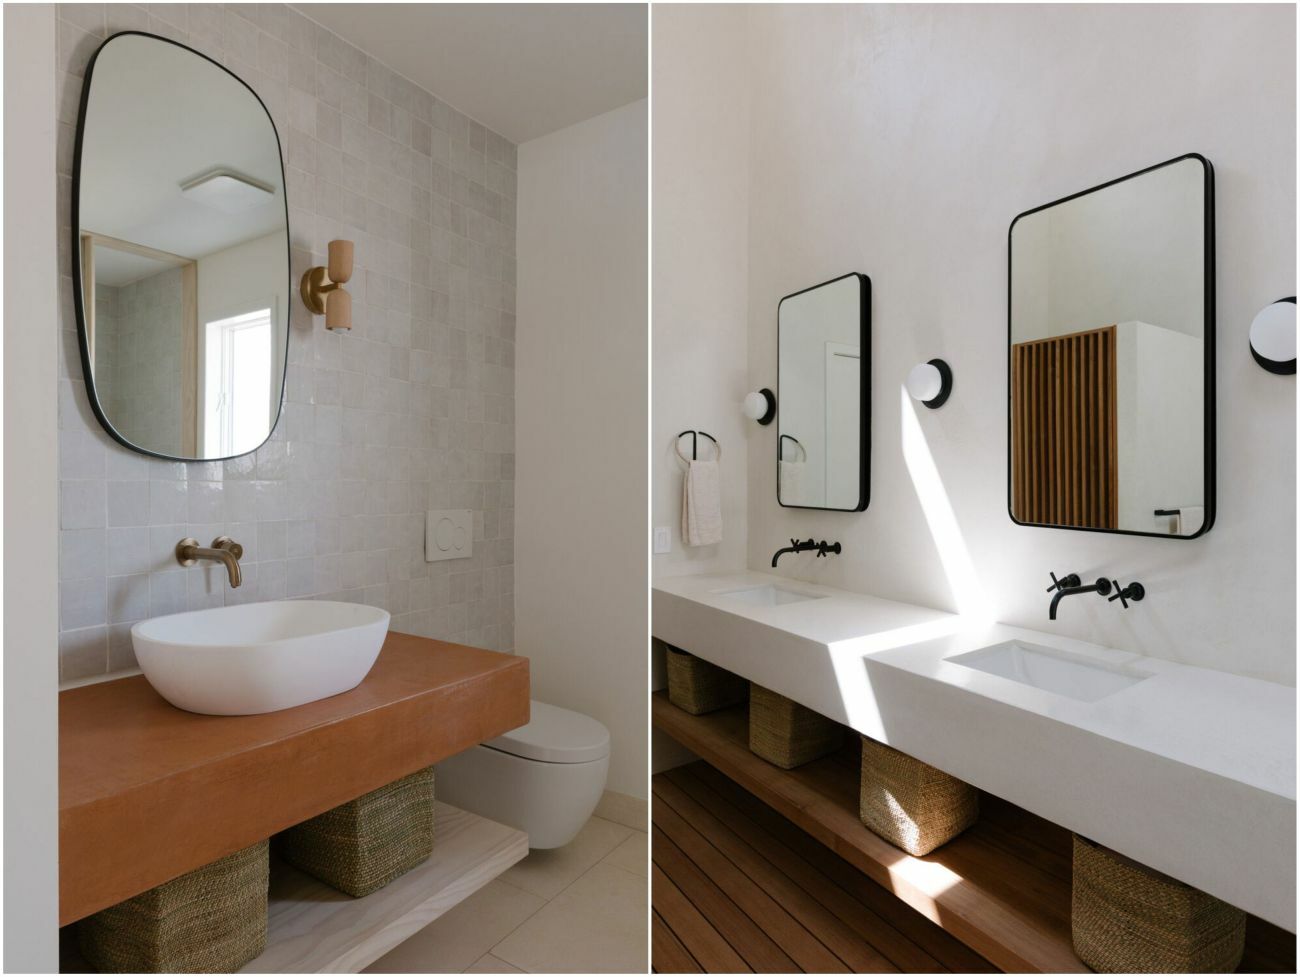 A fürdőszoba és a mosdó natúr és fehér koncepciója